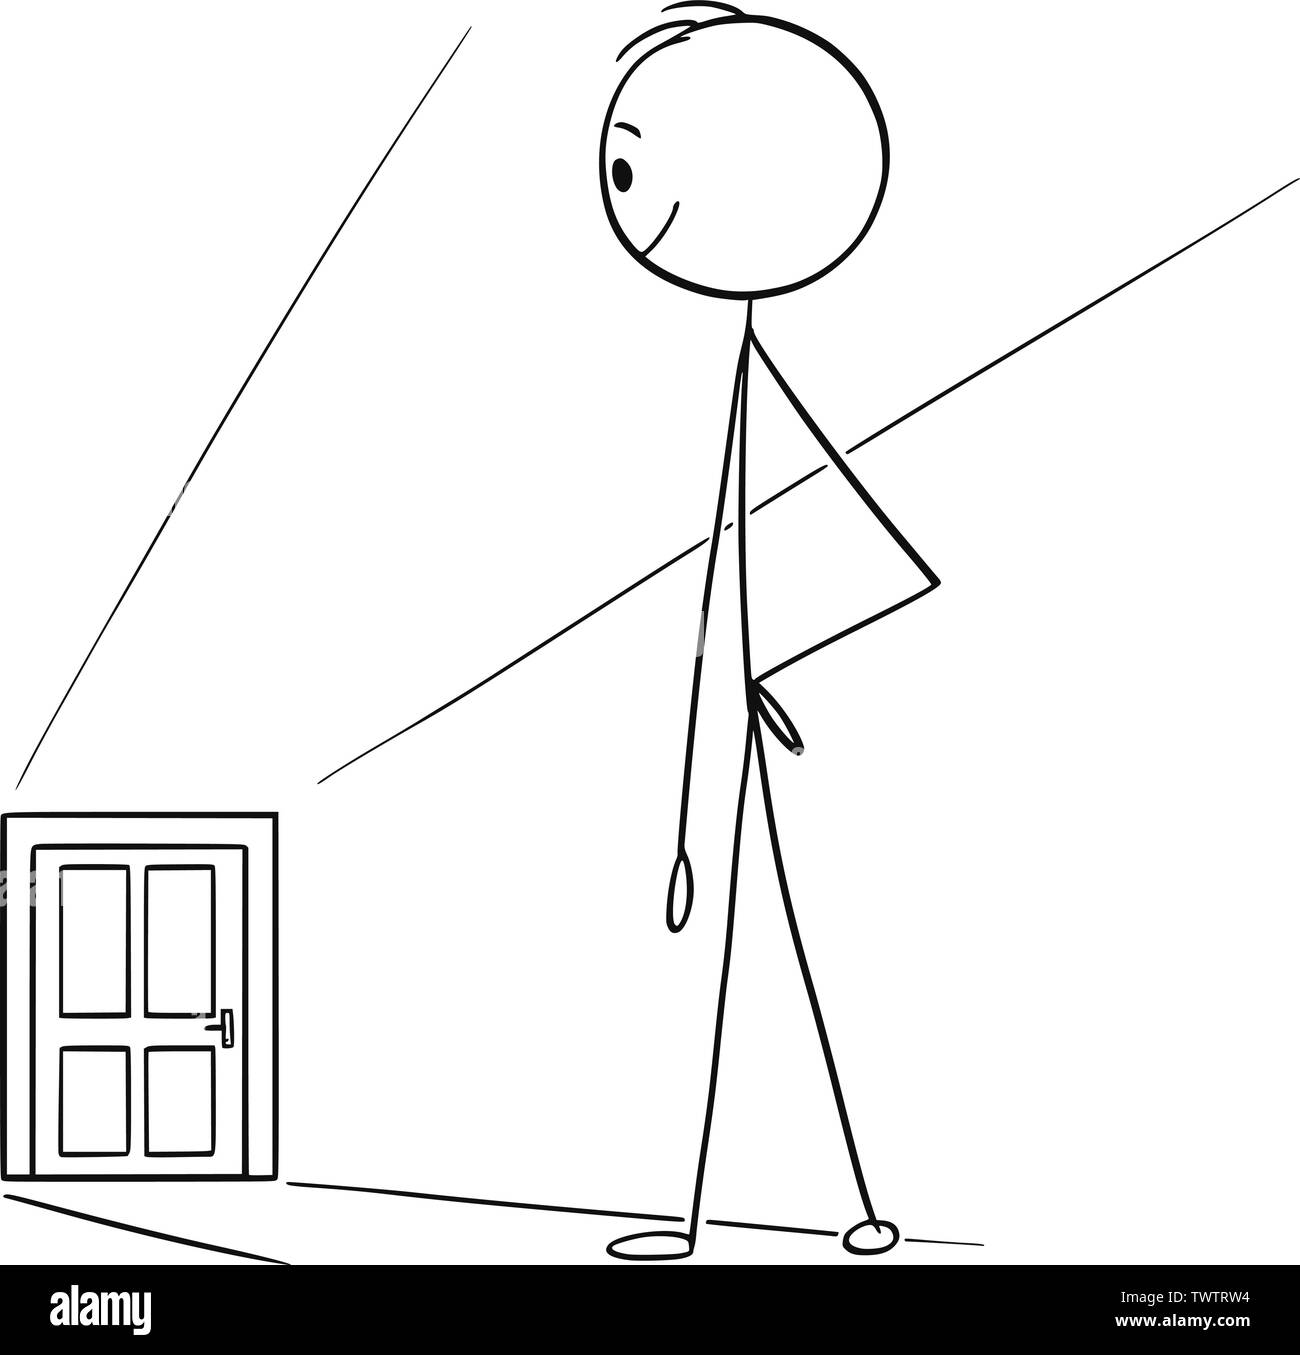 Vektor cartoon Strichmännchen Zeichnen in konzeptionelle Darstellung der Mann oder Geschäftsmann beobachten Tür weit als Chance oder Herausforderung Metapher. Stock Vektor